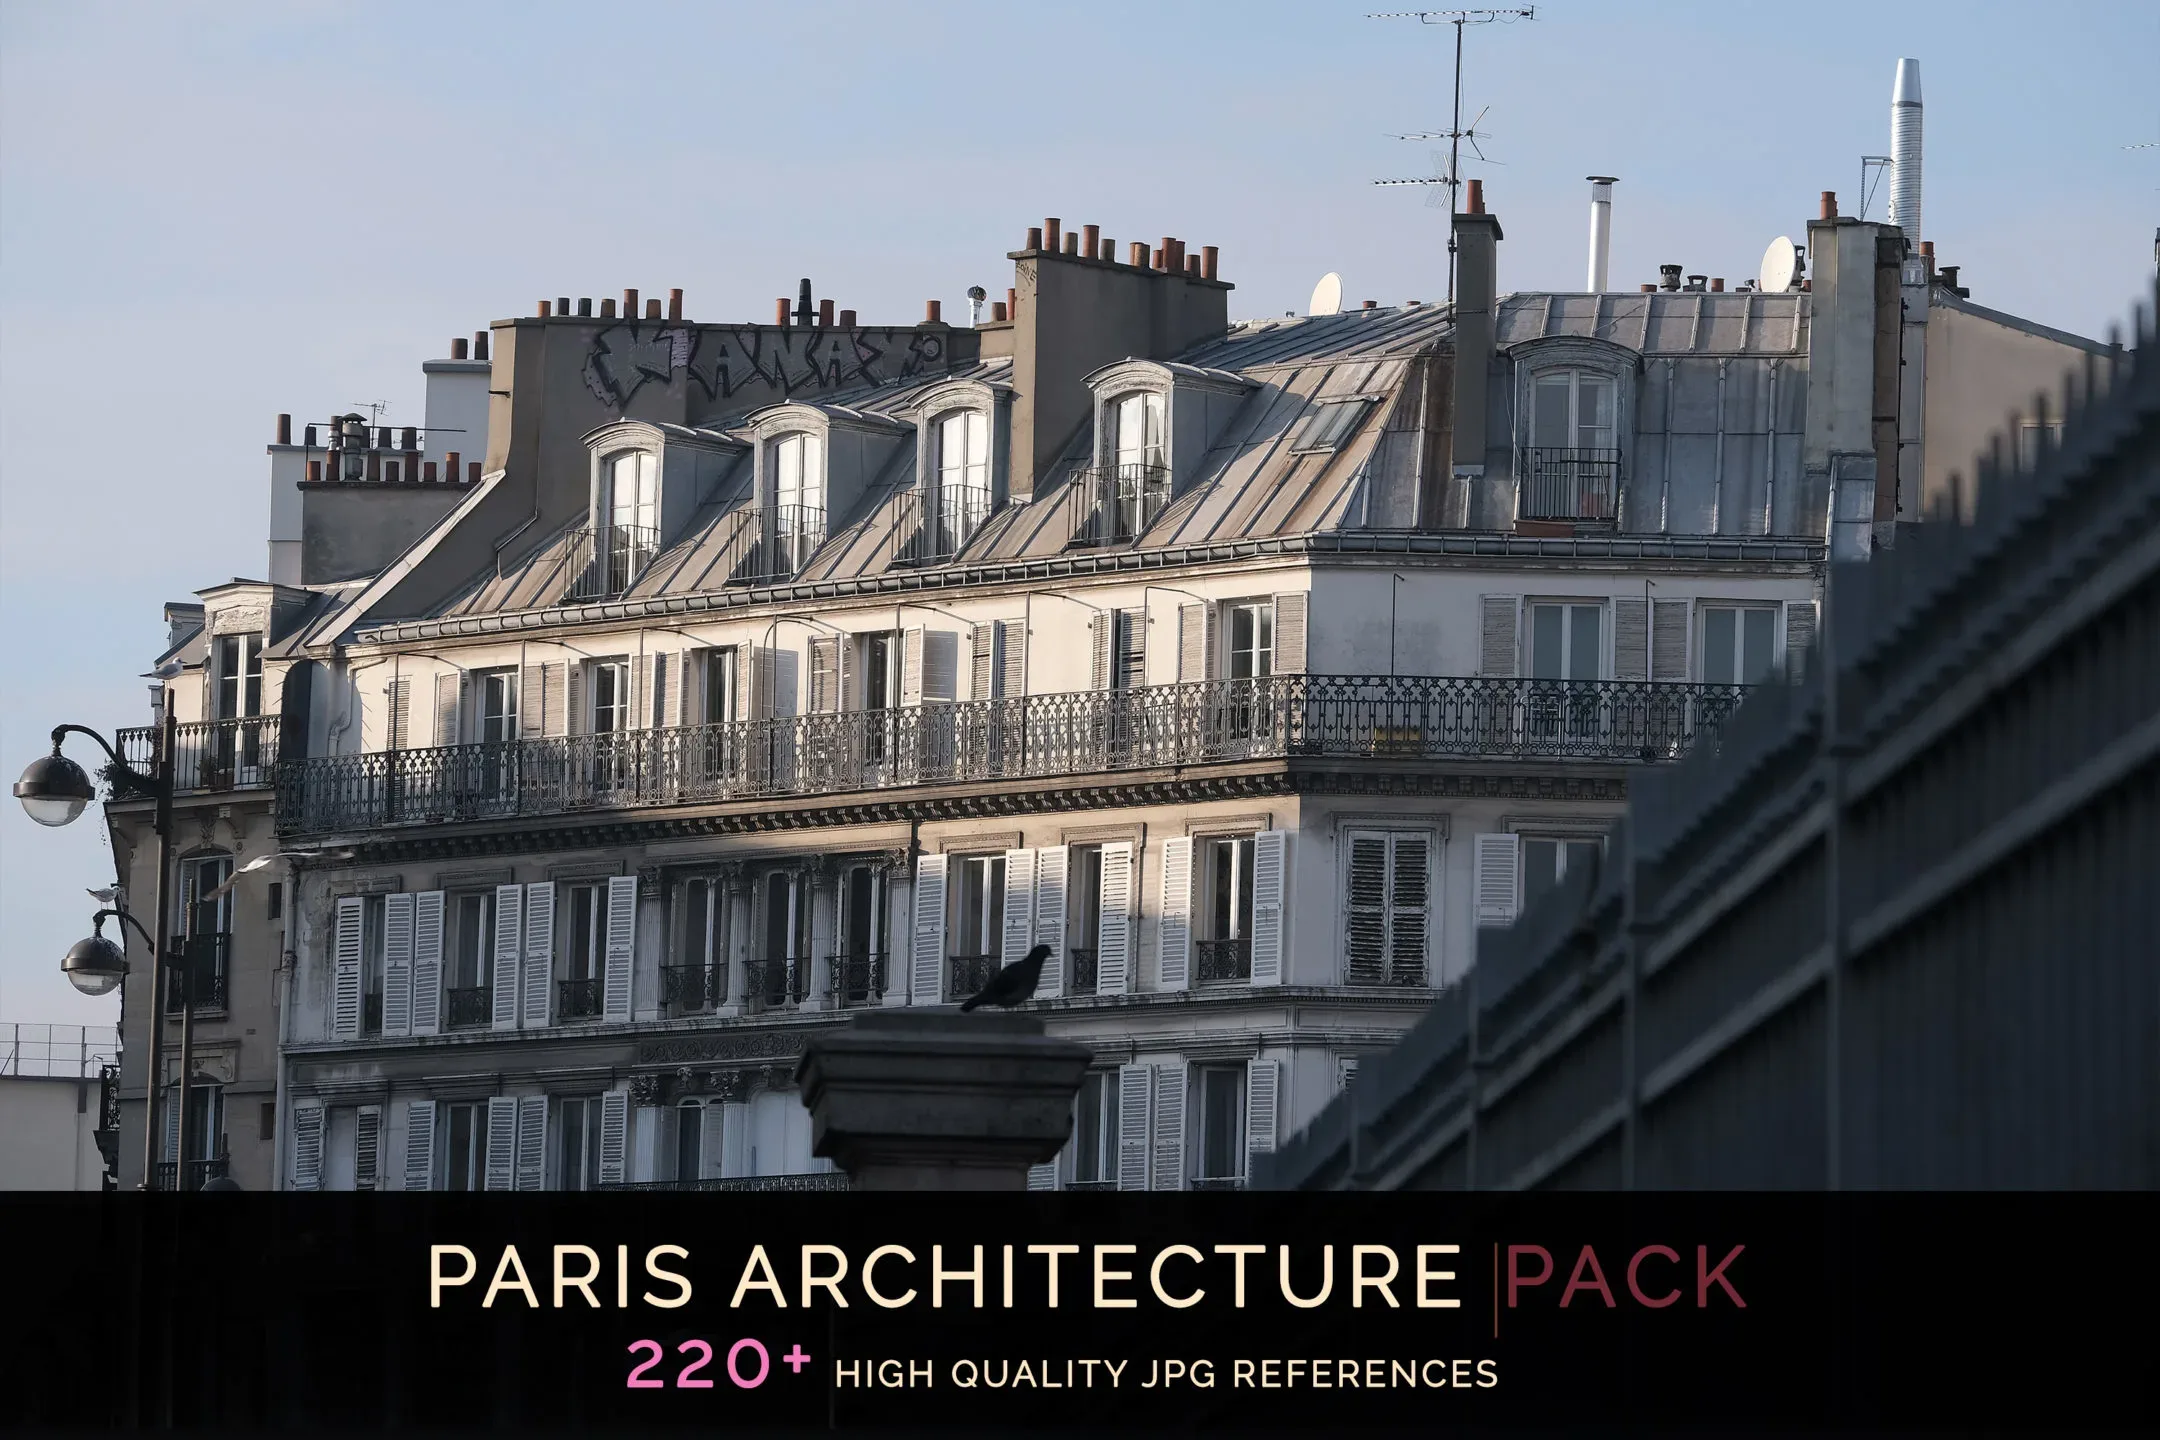 Paris Architecture Pack